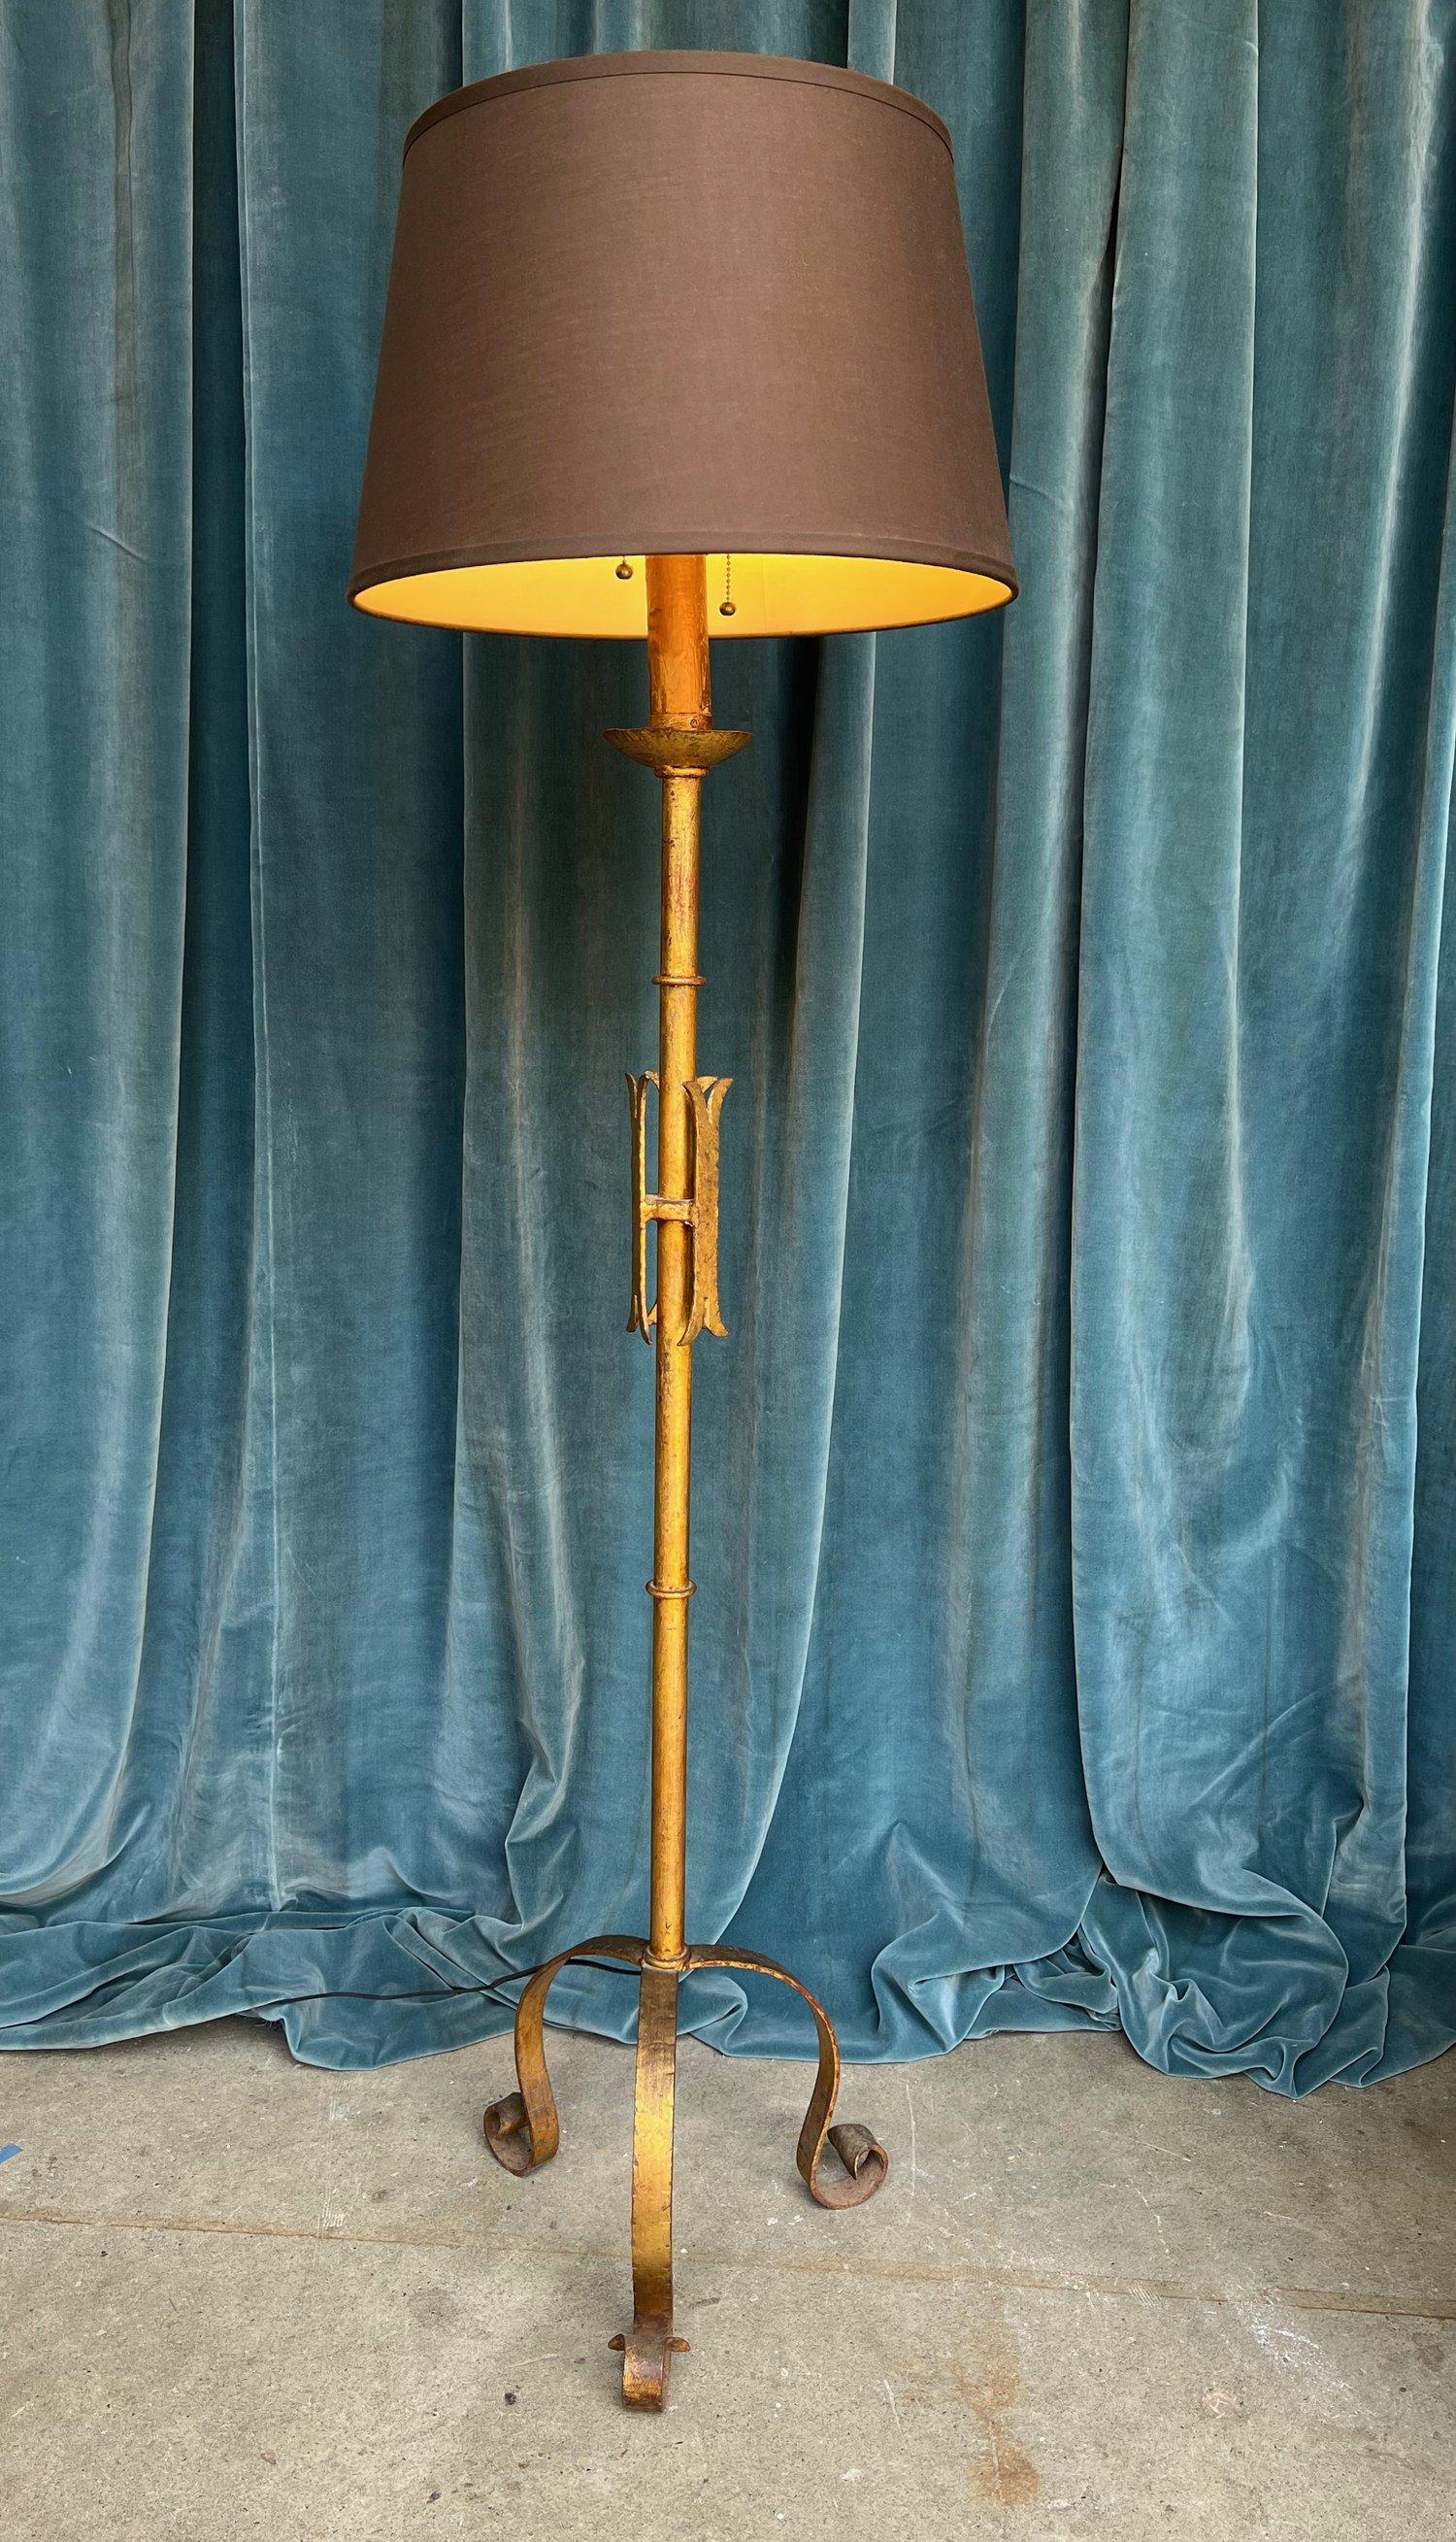 Voici un lampadaire unique en fer doré espagnol des années 1950 qui ajoute une touche d'élégance à n'importe quel espace. Ce lampadaire en fer présente une étonnante patine dorée, créant un attrait visuel captivant. Le motif central médiéval stylisé